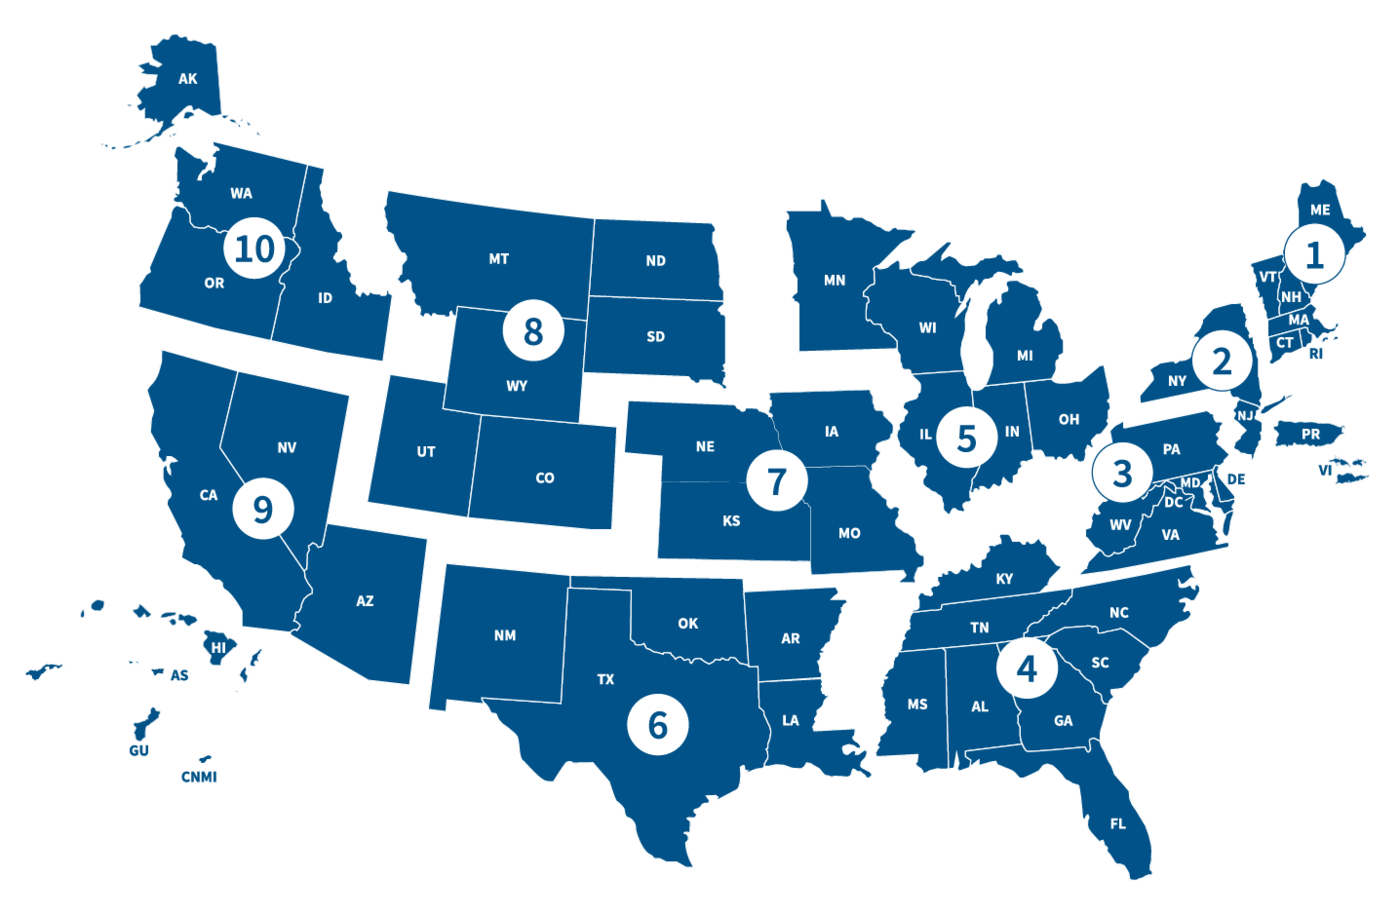 FEMA Regional US Map Showing 10 Regions (Regions 1-10)